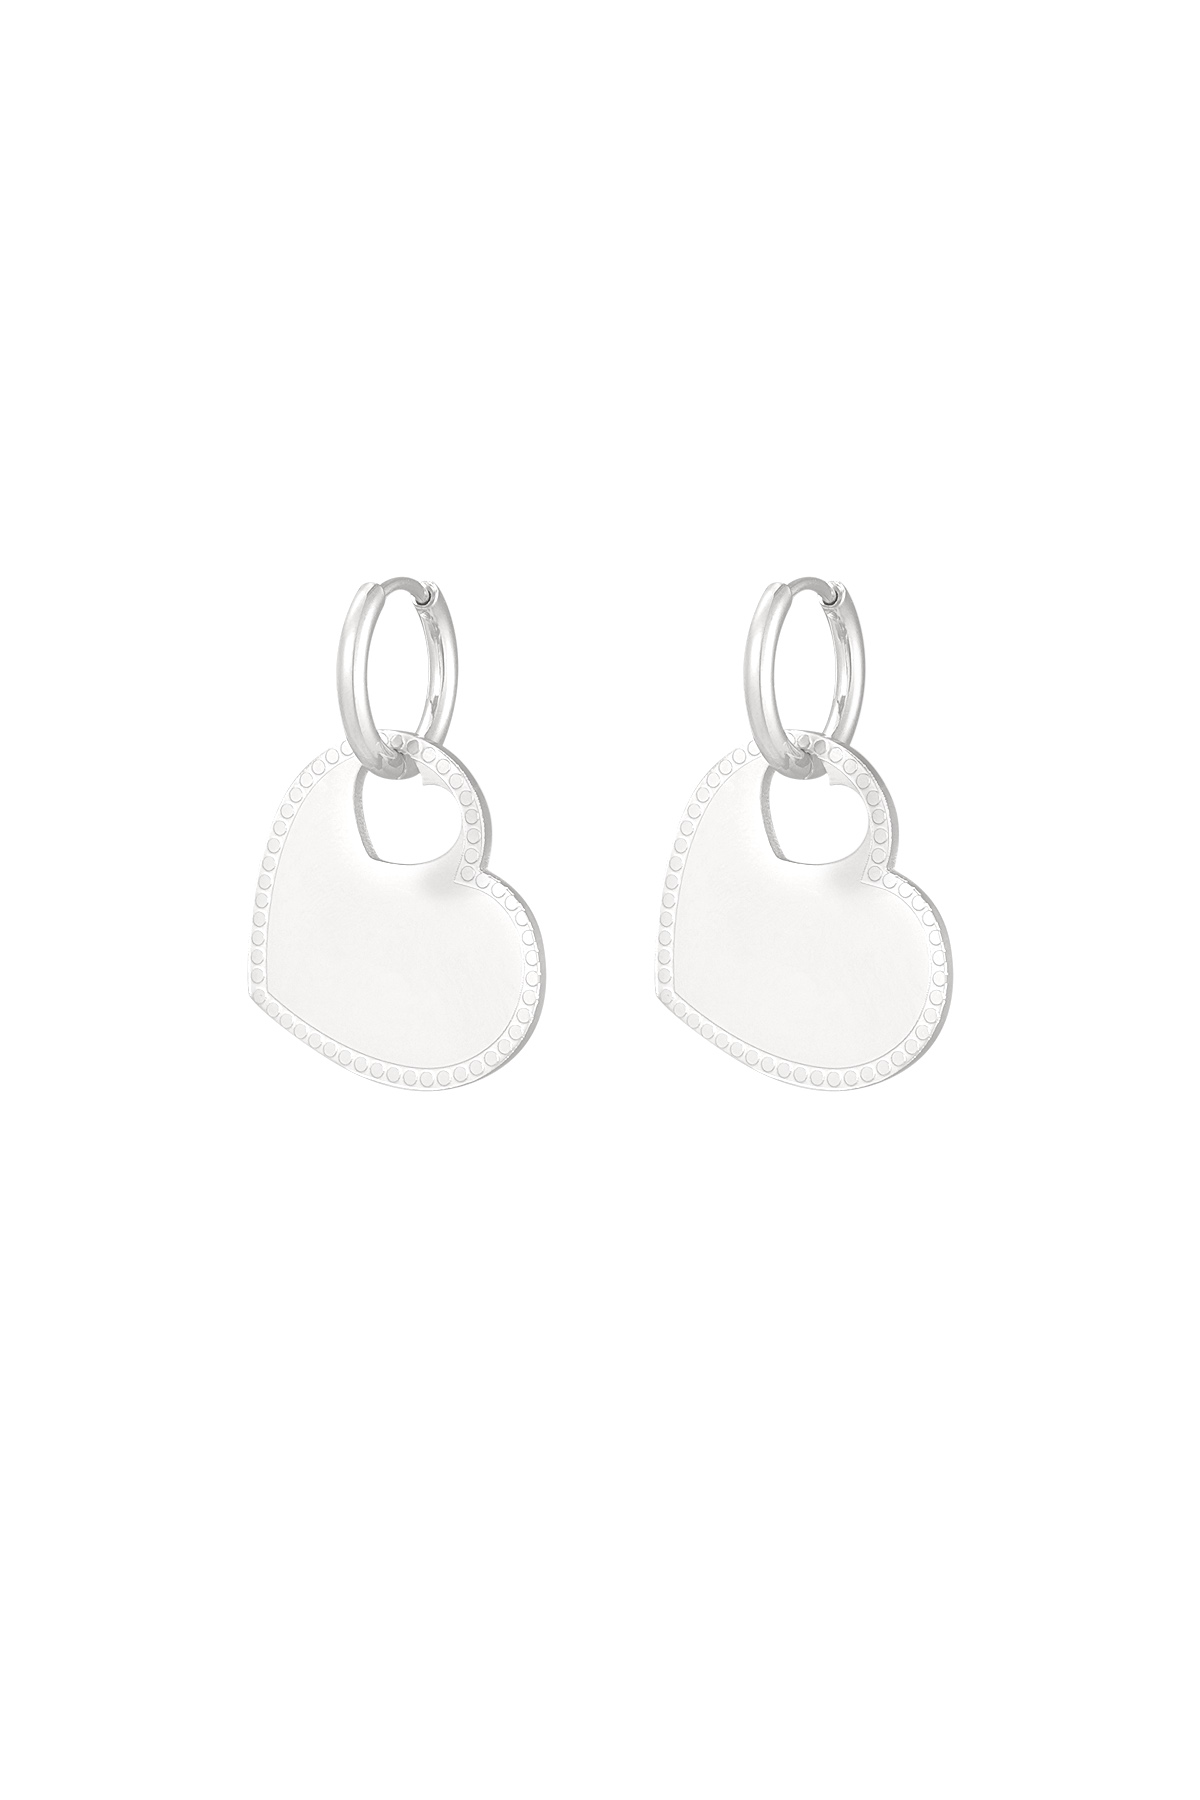 Earrings heart charm - silver h5 